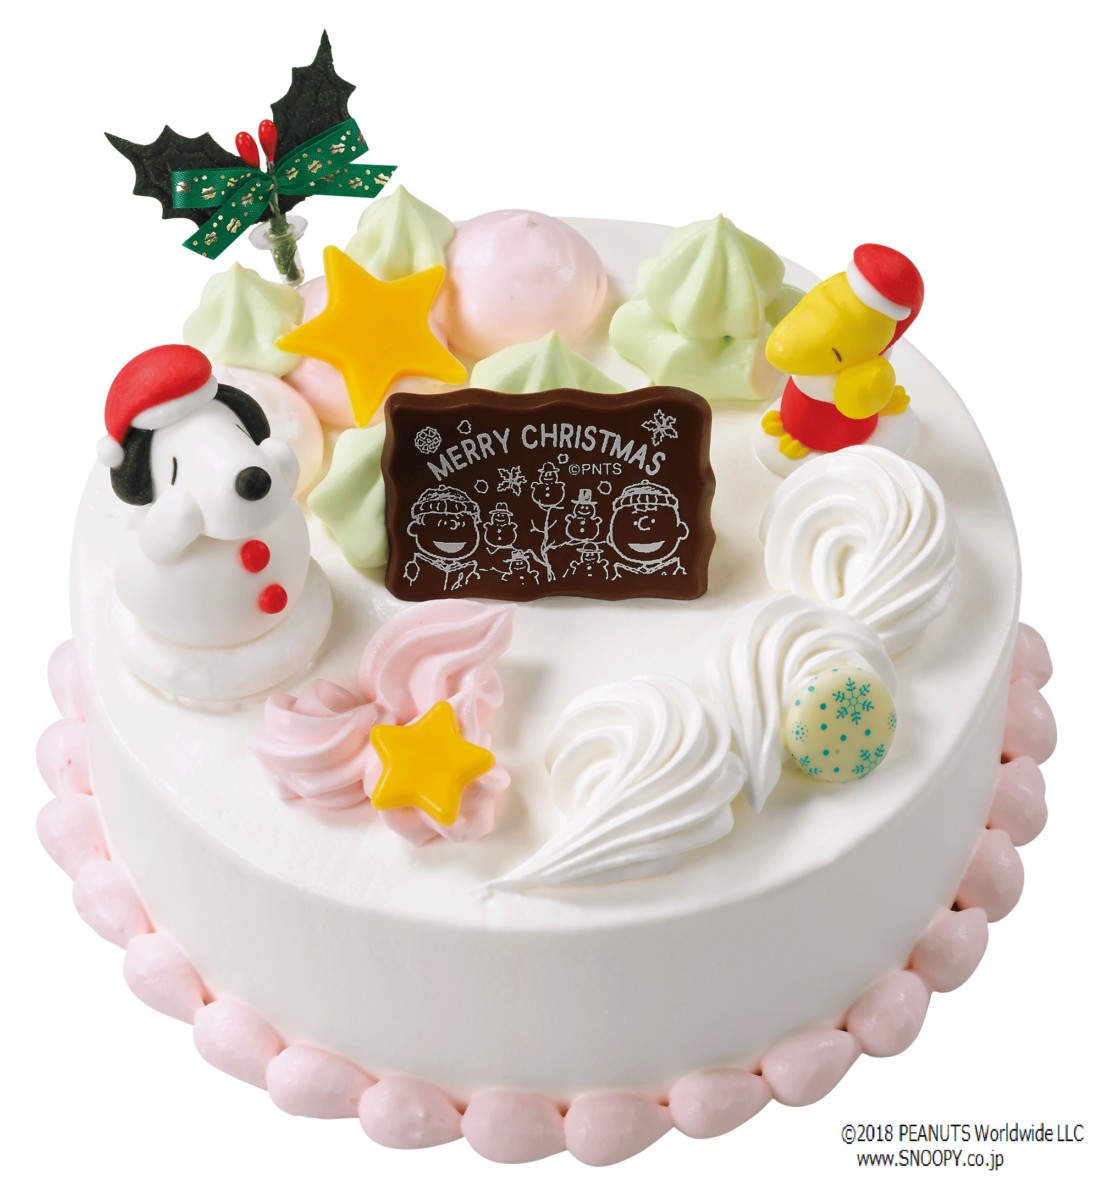 ディズニー や ミニオン のアイスケーキが登場 サーティワン アイスクリーム Happy Ice Cream Xmas ハッピーアイスクリームクリスマス キャンペーン Dtimes